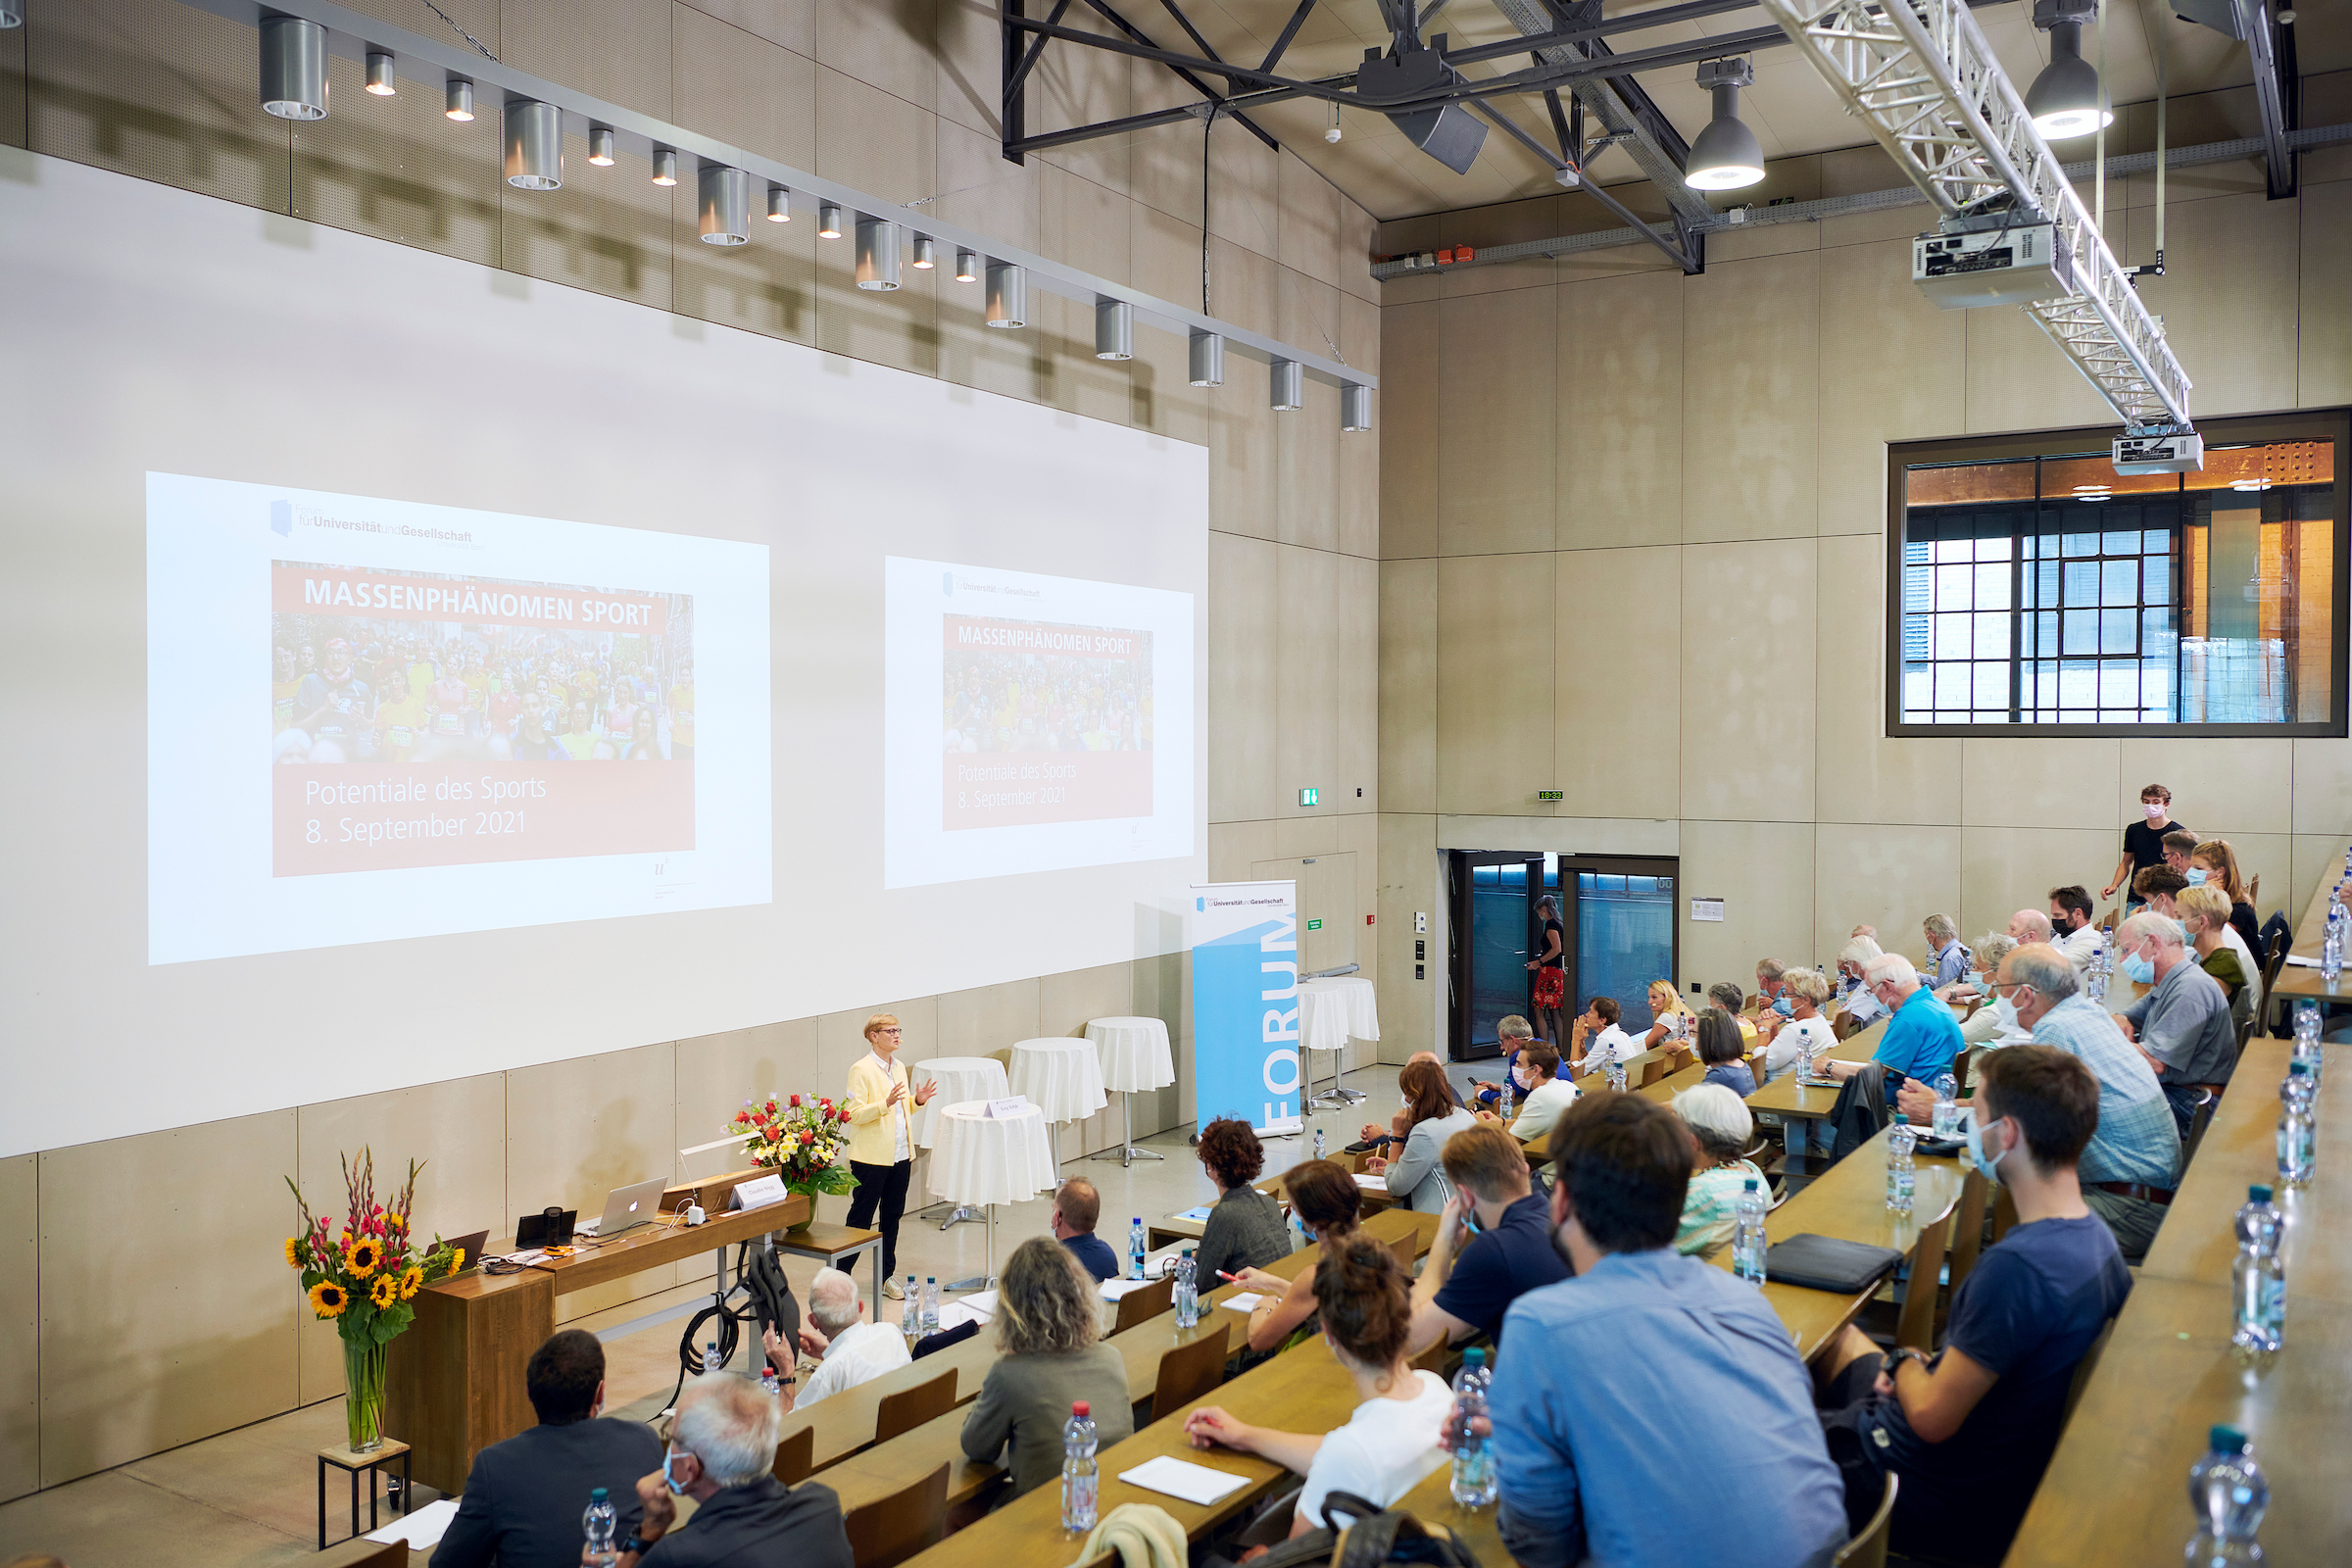 Das Publikum sitzt im Hörsaal der Universität Bern und lauscht der Begrüssung der Moderatorin Susy Schär, die vorne am Rednerpult steht